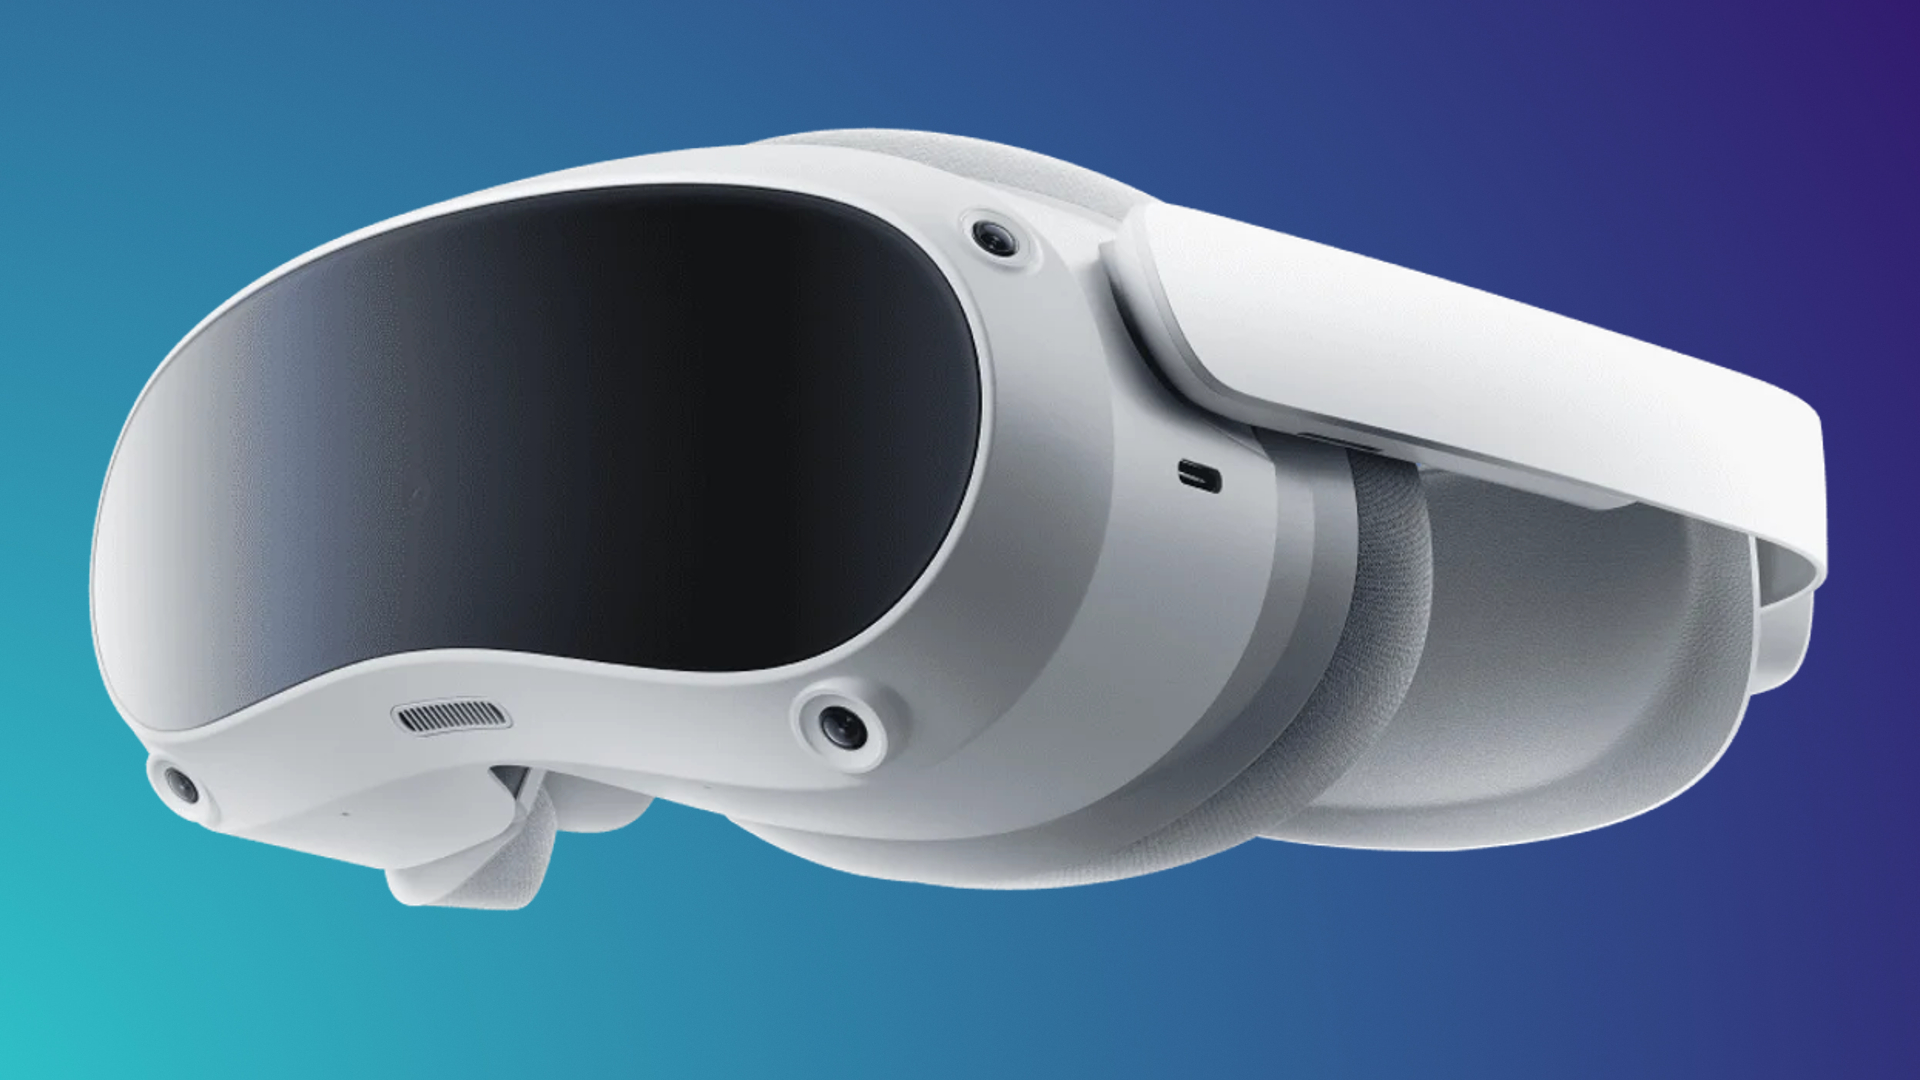 Il visore VR rivale di Oculus Quest 2, Pico 4, non è stato all'altezza delle aspettative di vendita